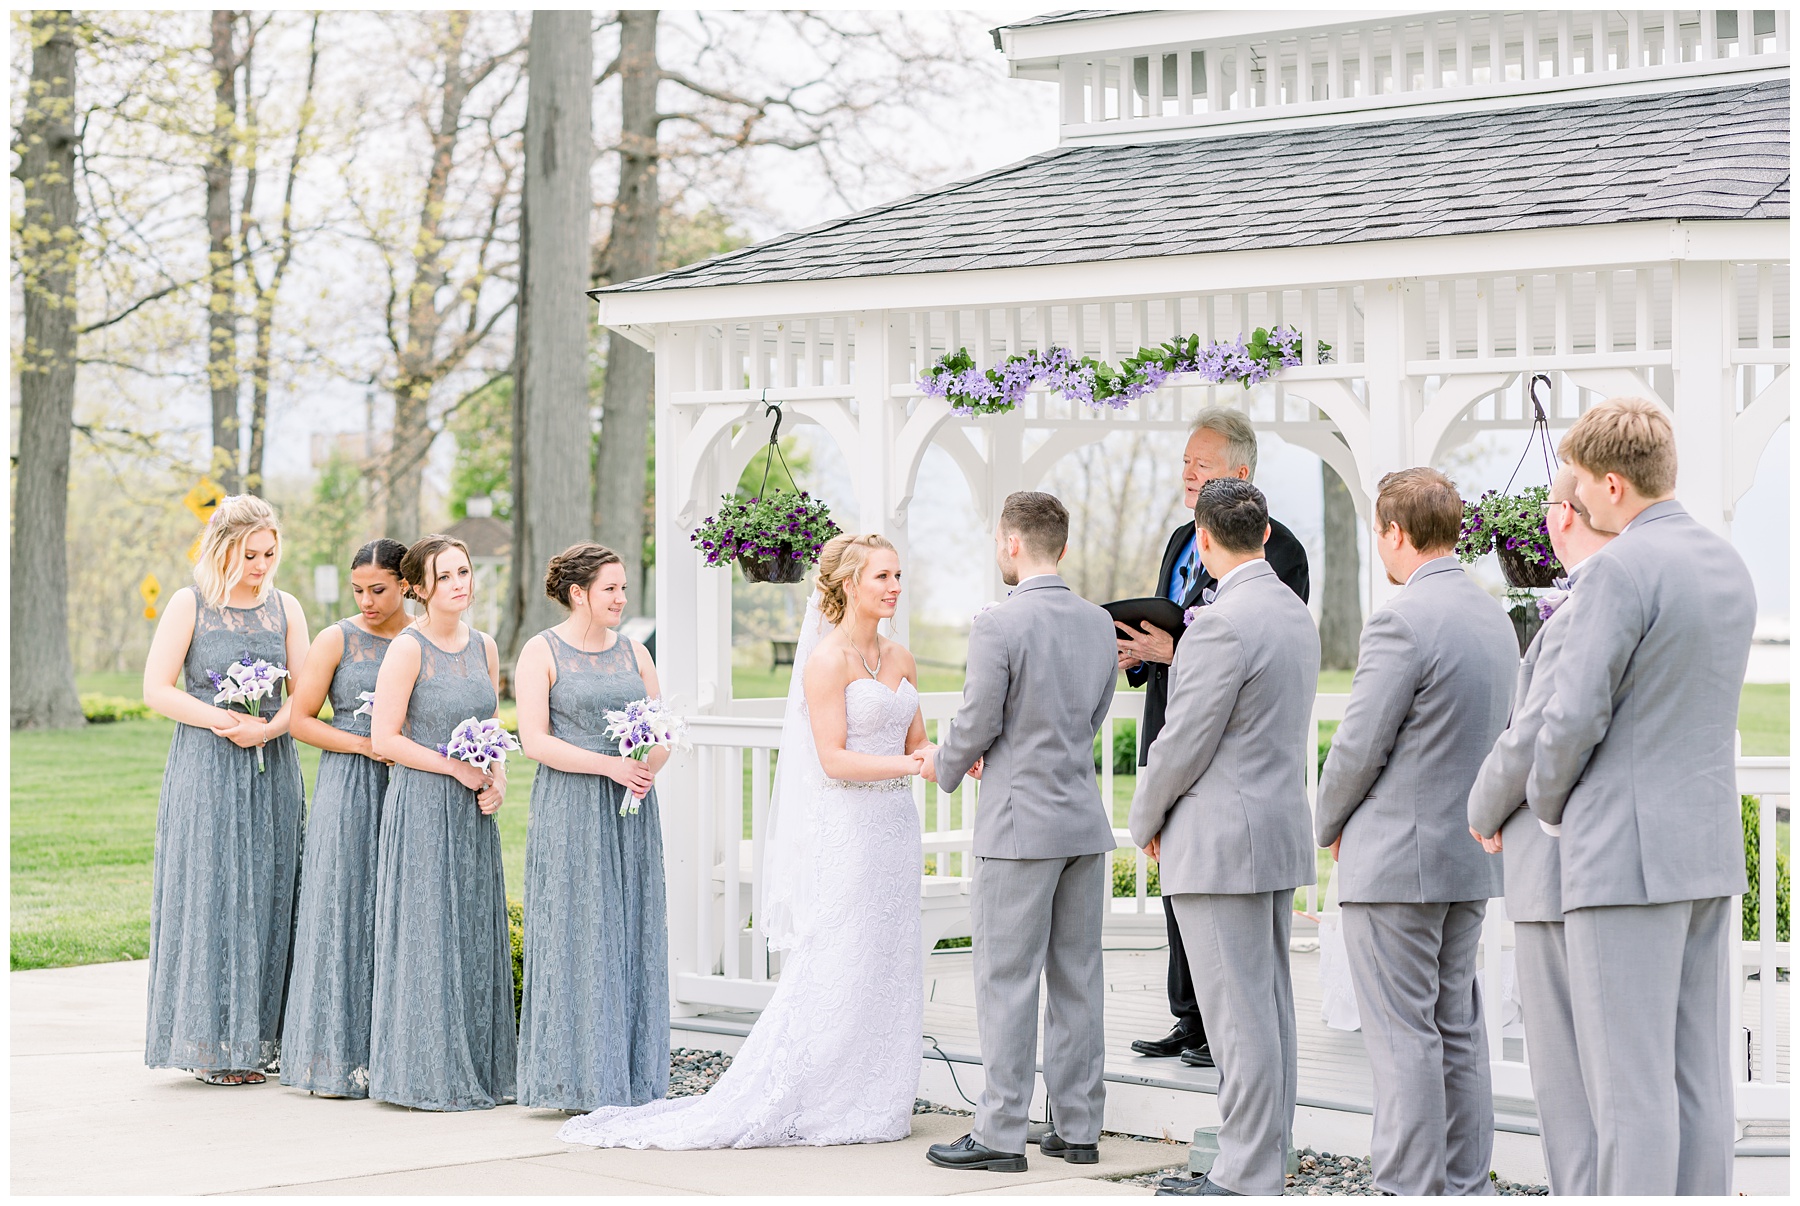 Romantic Lakefront wedding at The Lodge at Geneva on the Lake Ohio Photographer, Amanda Eloise Photography, Wedding Photographer